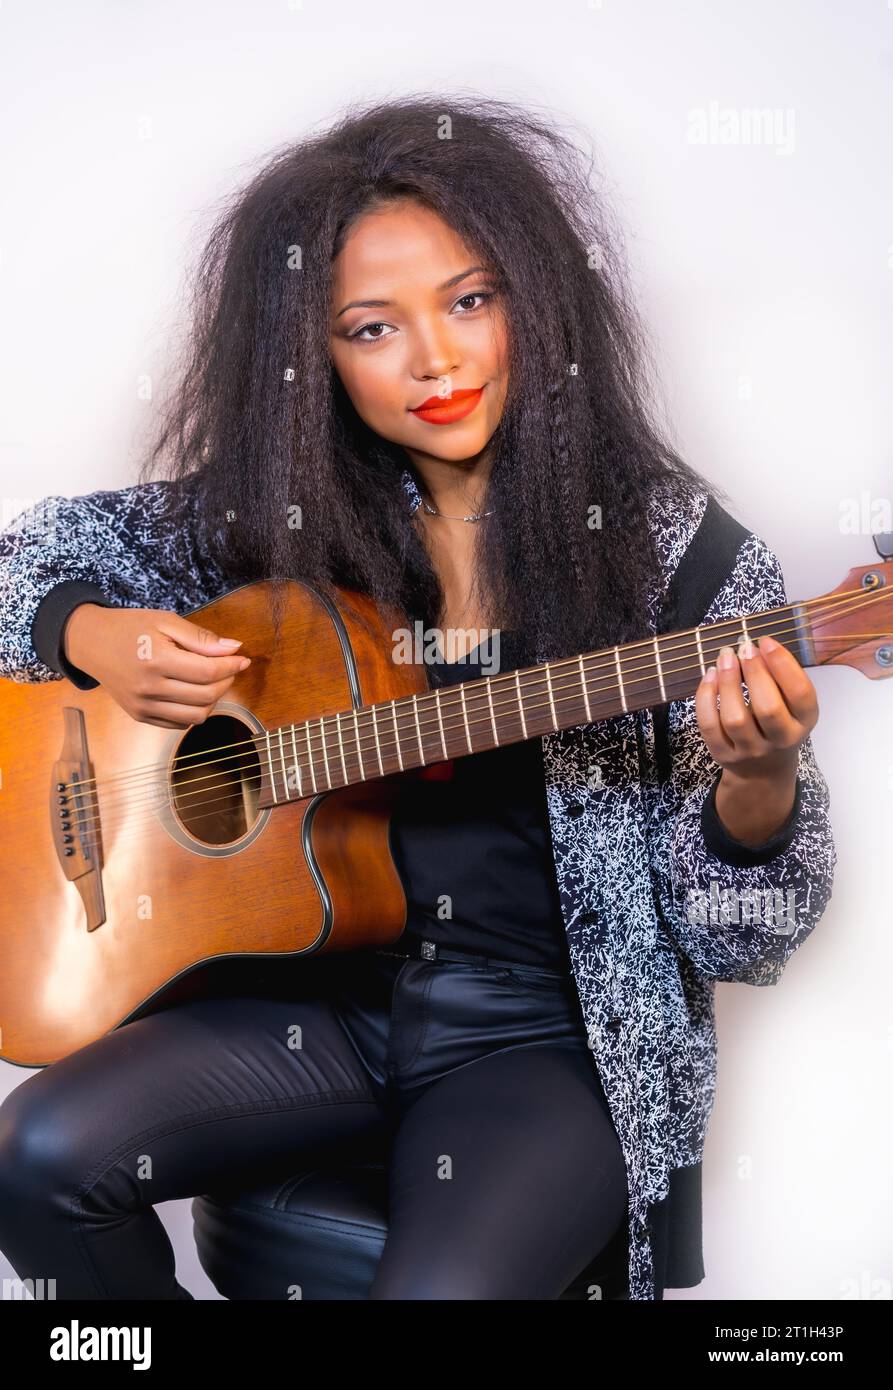 Un ritratto closeup di un'elegante e attraente musicista femminile che tiene una chitarra acustica sulla spalla Foto Stock